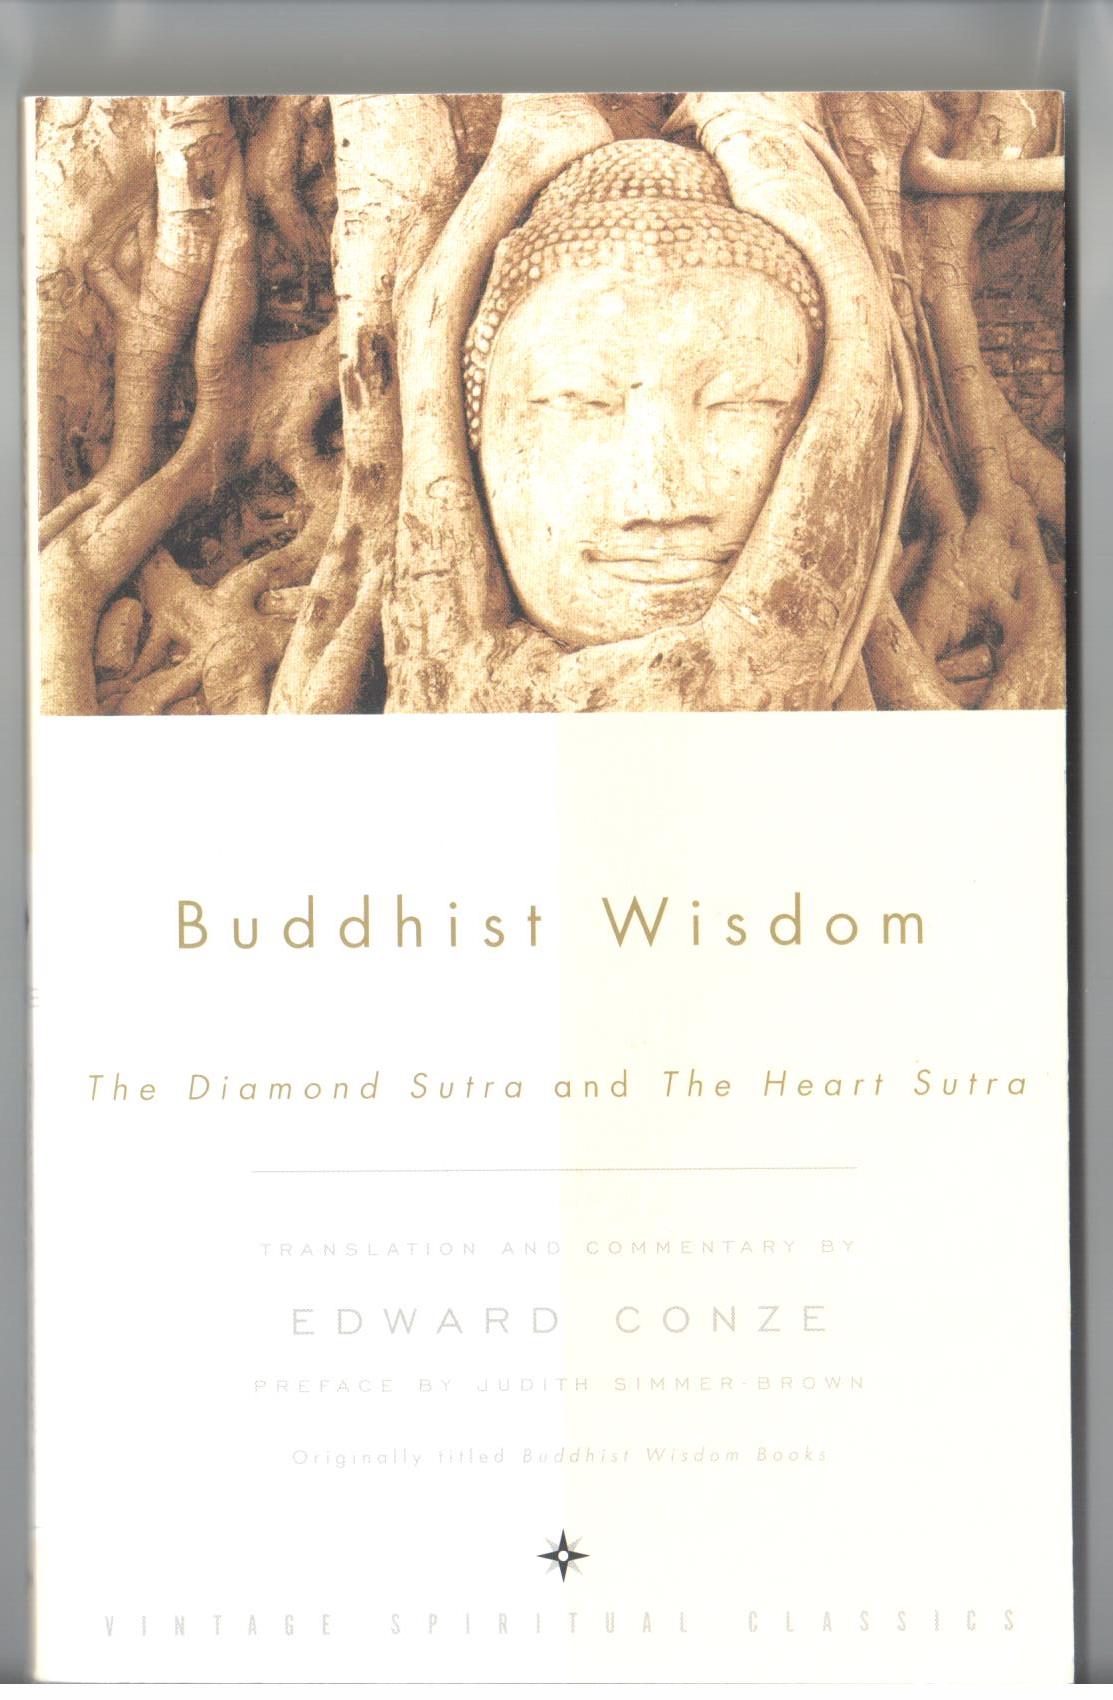 에드워드 콘츠가 영어로 번역한 <금강경>과 <반야심경>의 표지 콘츠는 'Buddhist Wisdom'이라는 제목으로 <금강경>과 <반야심경>을
영어로 옮겼다.